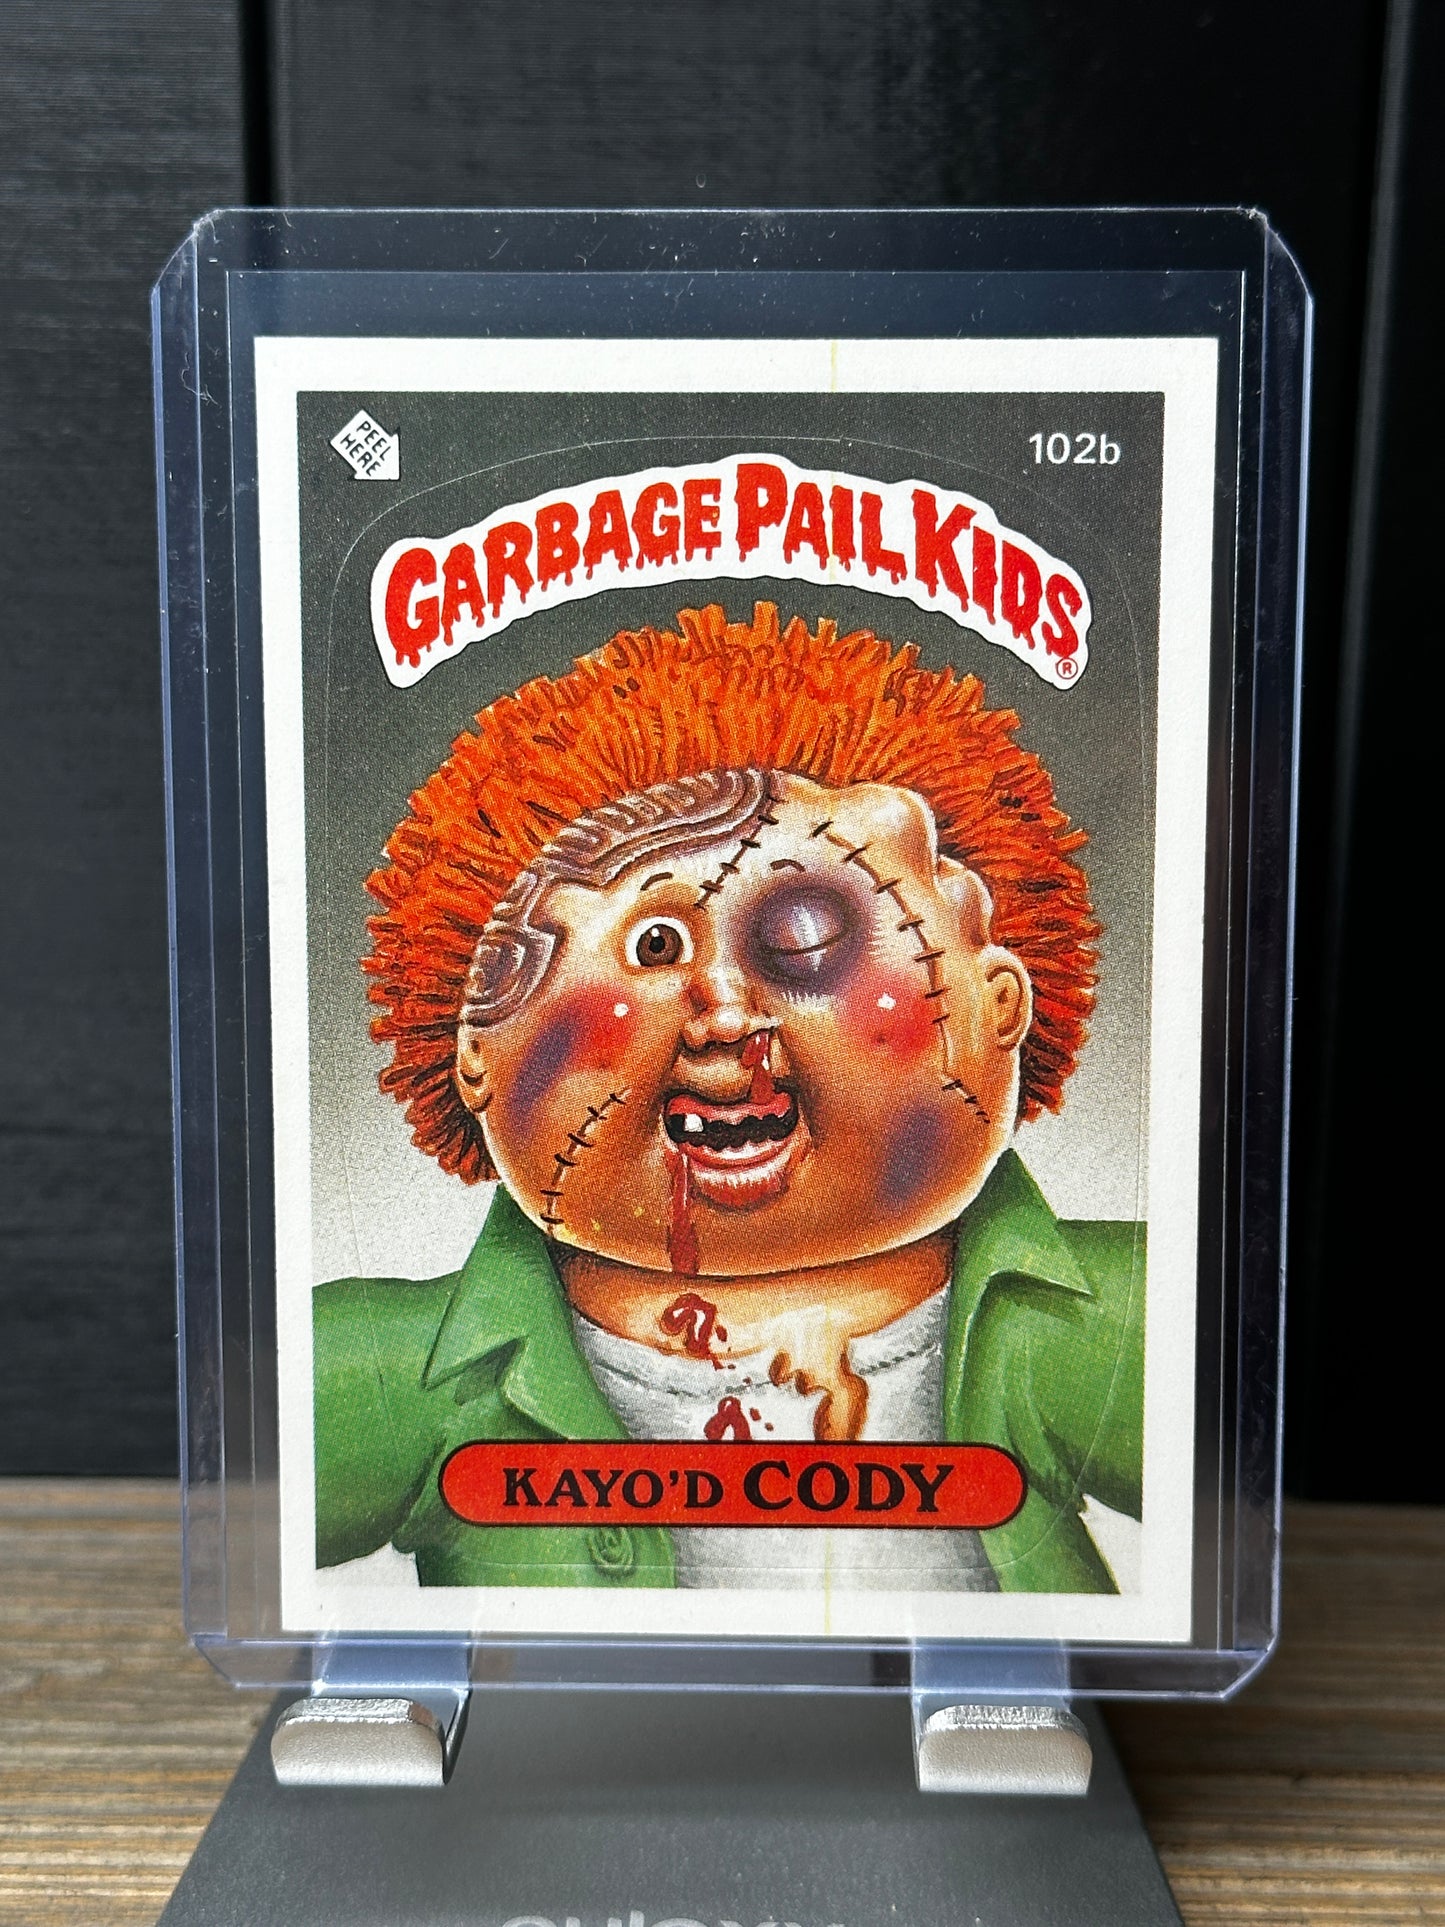 1986 Topps Garbage Pail Kids # 102b KAYO'D CODY Original